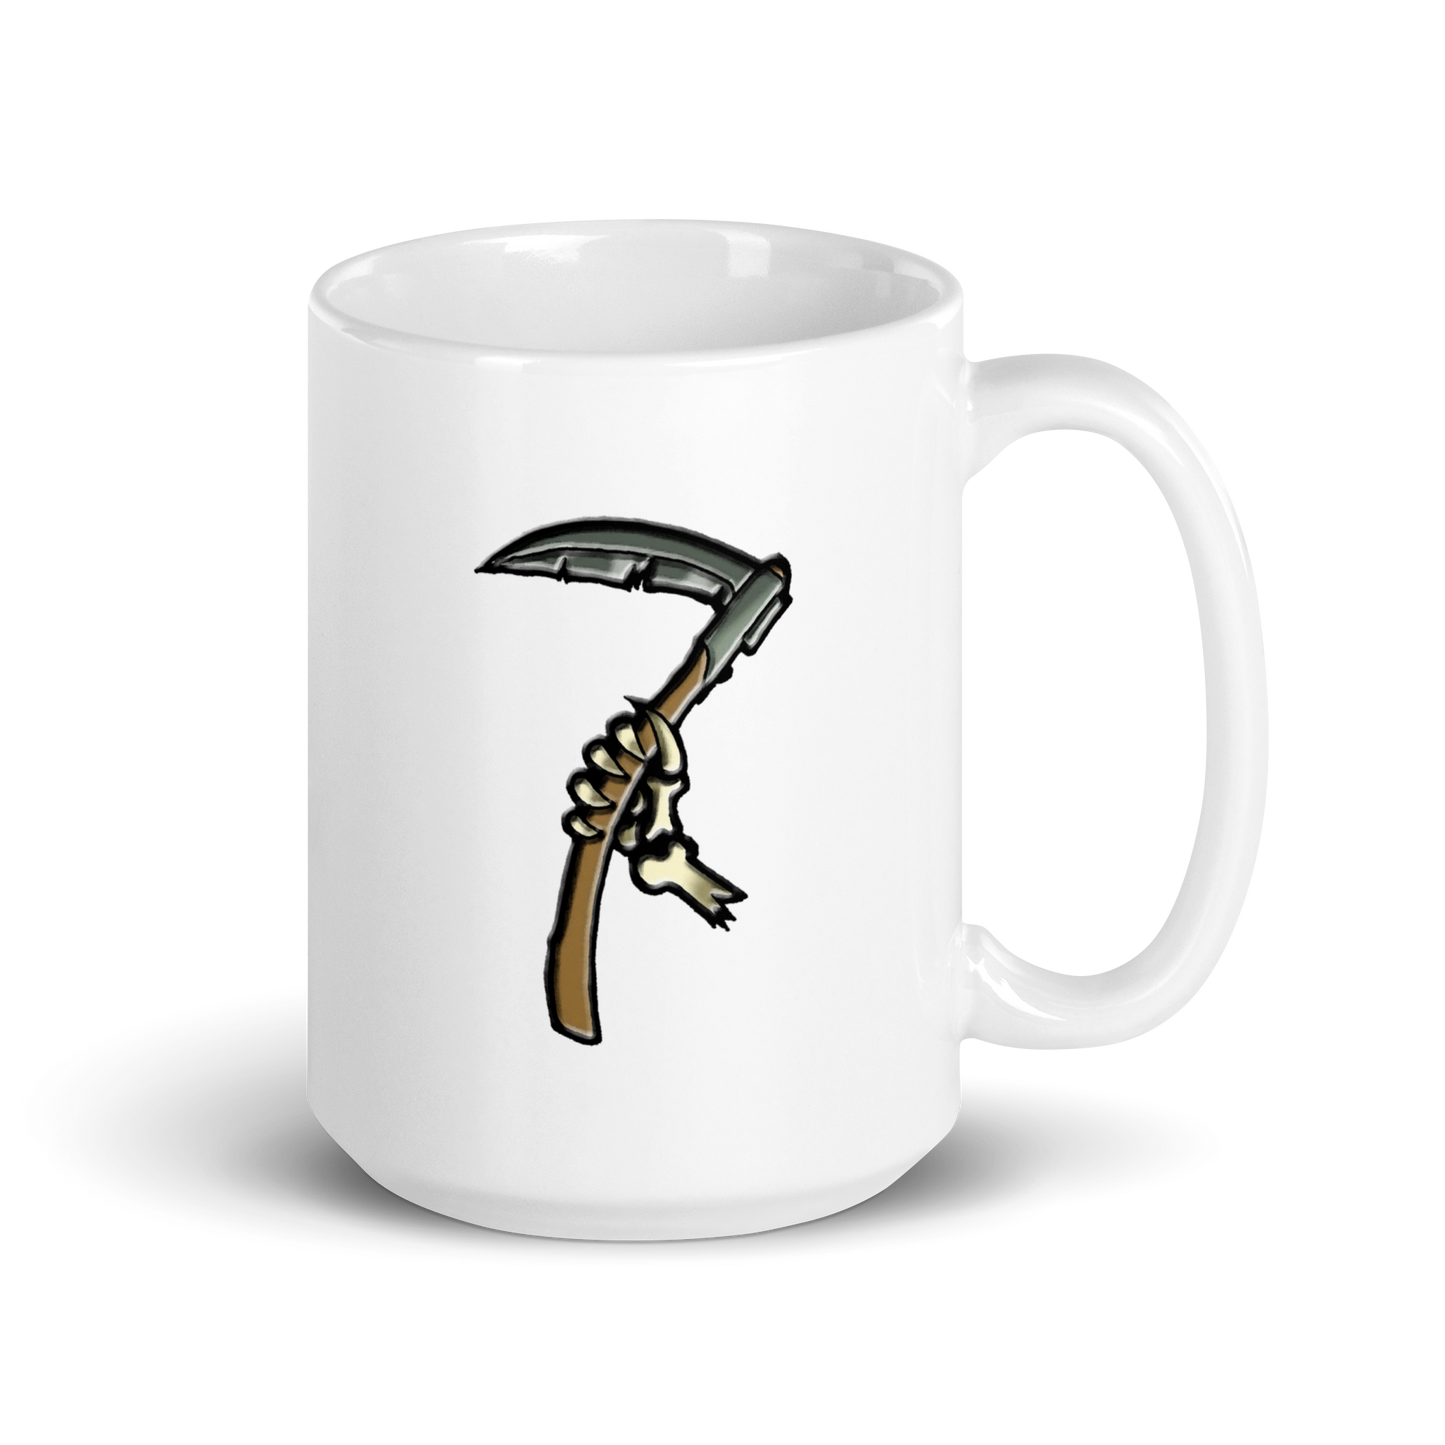 EverQuest®II Bertoxxulous Deity Mug